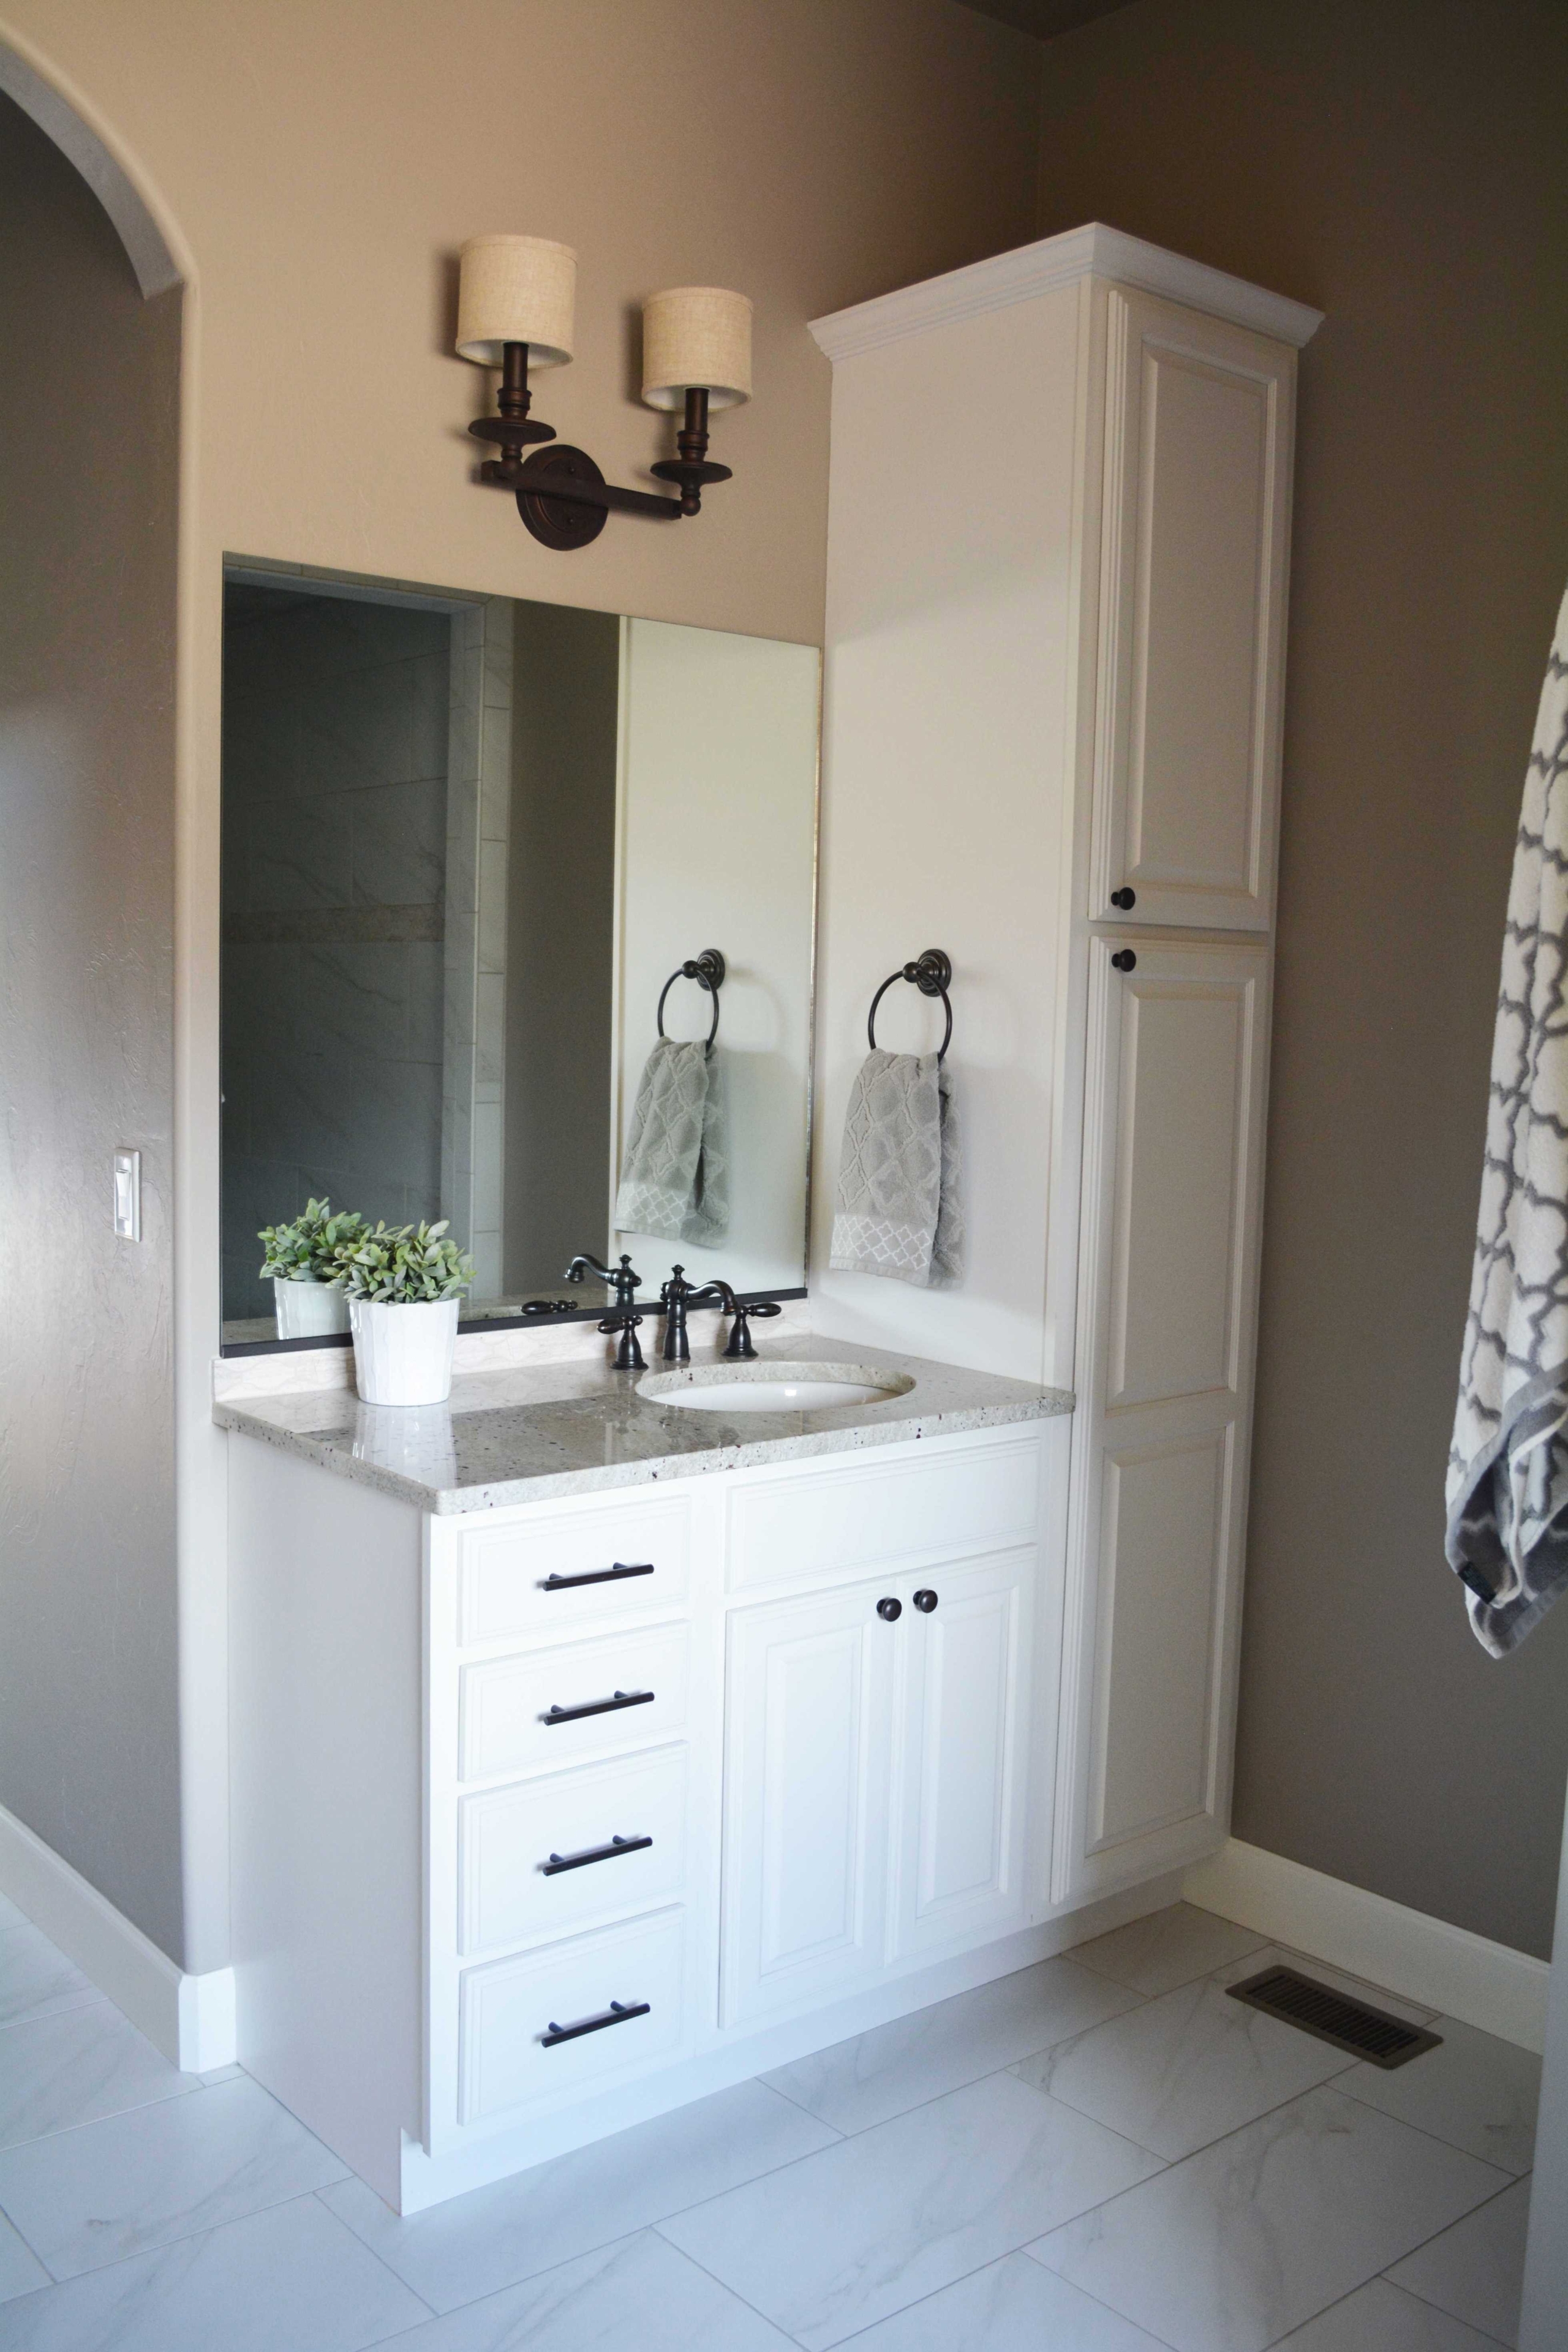 Bathroom Vanity And Linen Cabinet Combo, Bathroom Vanity With Towel Storage